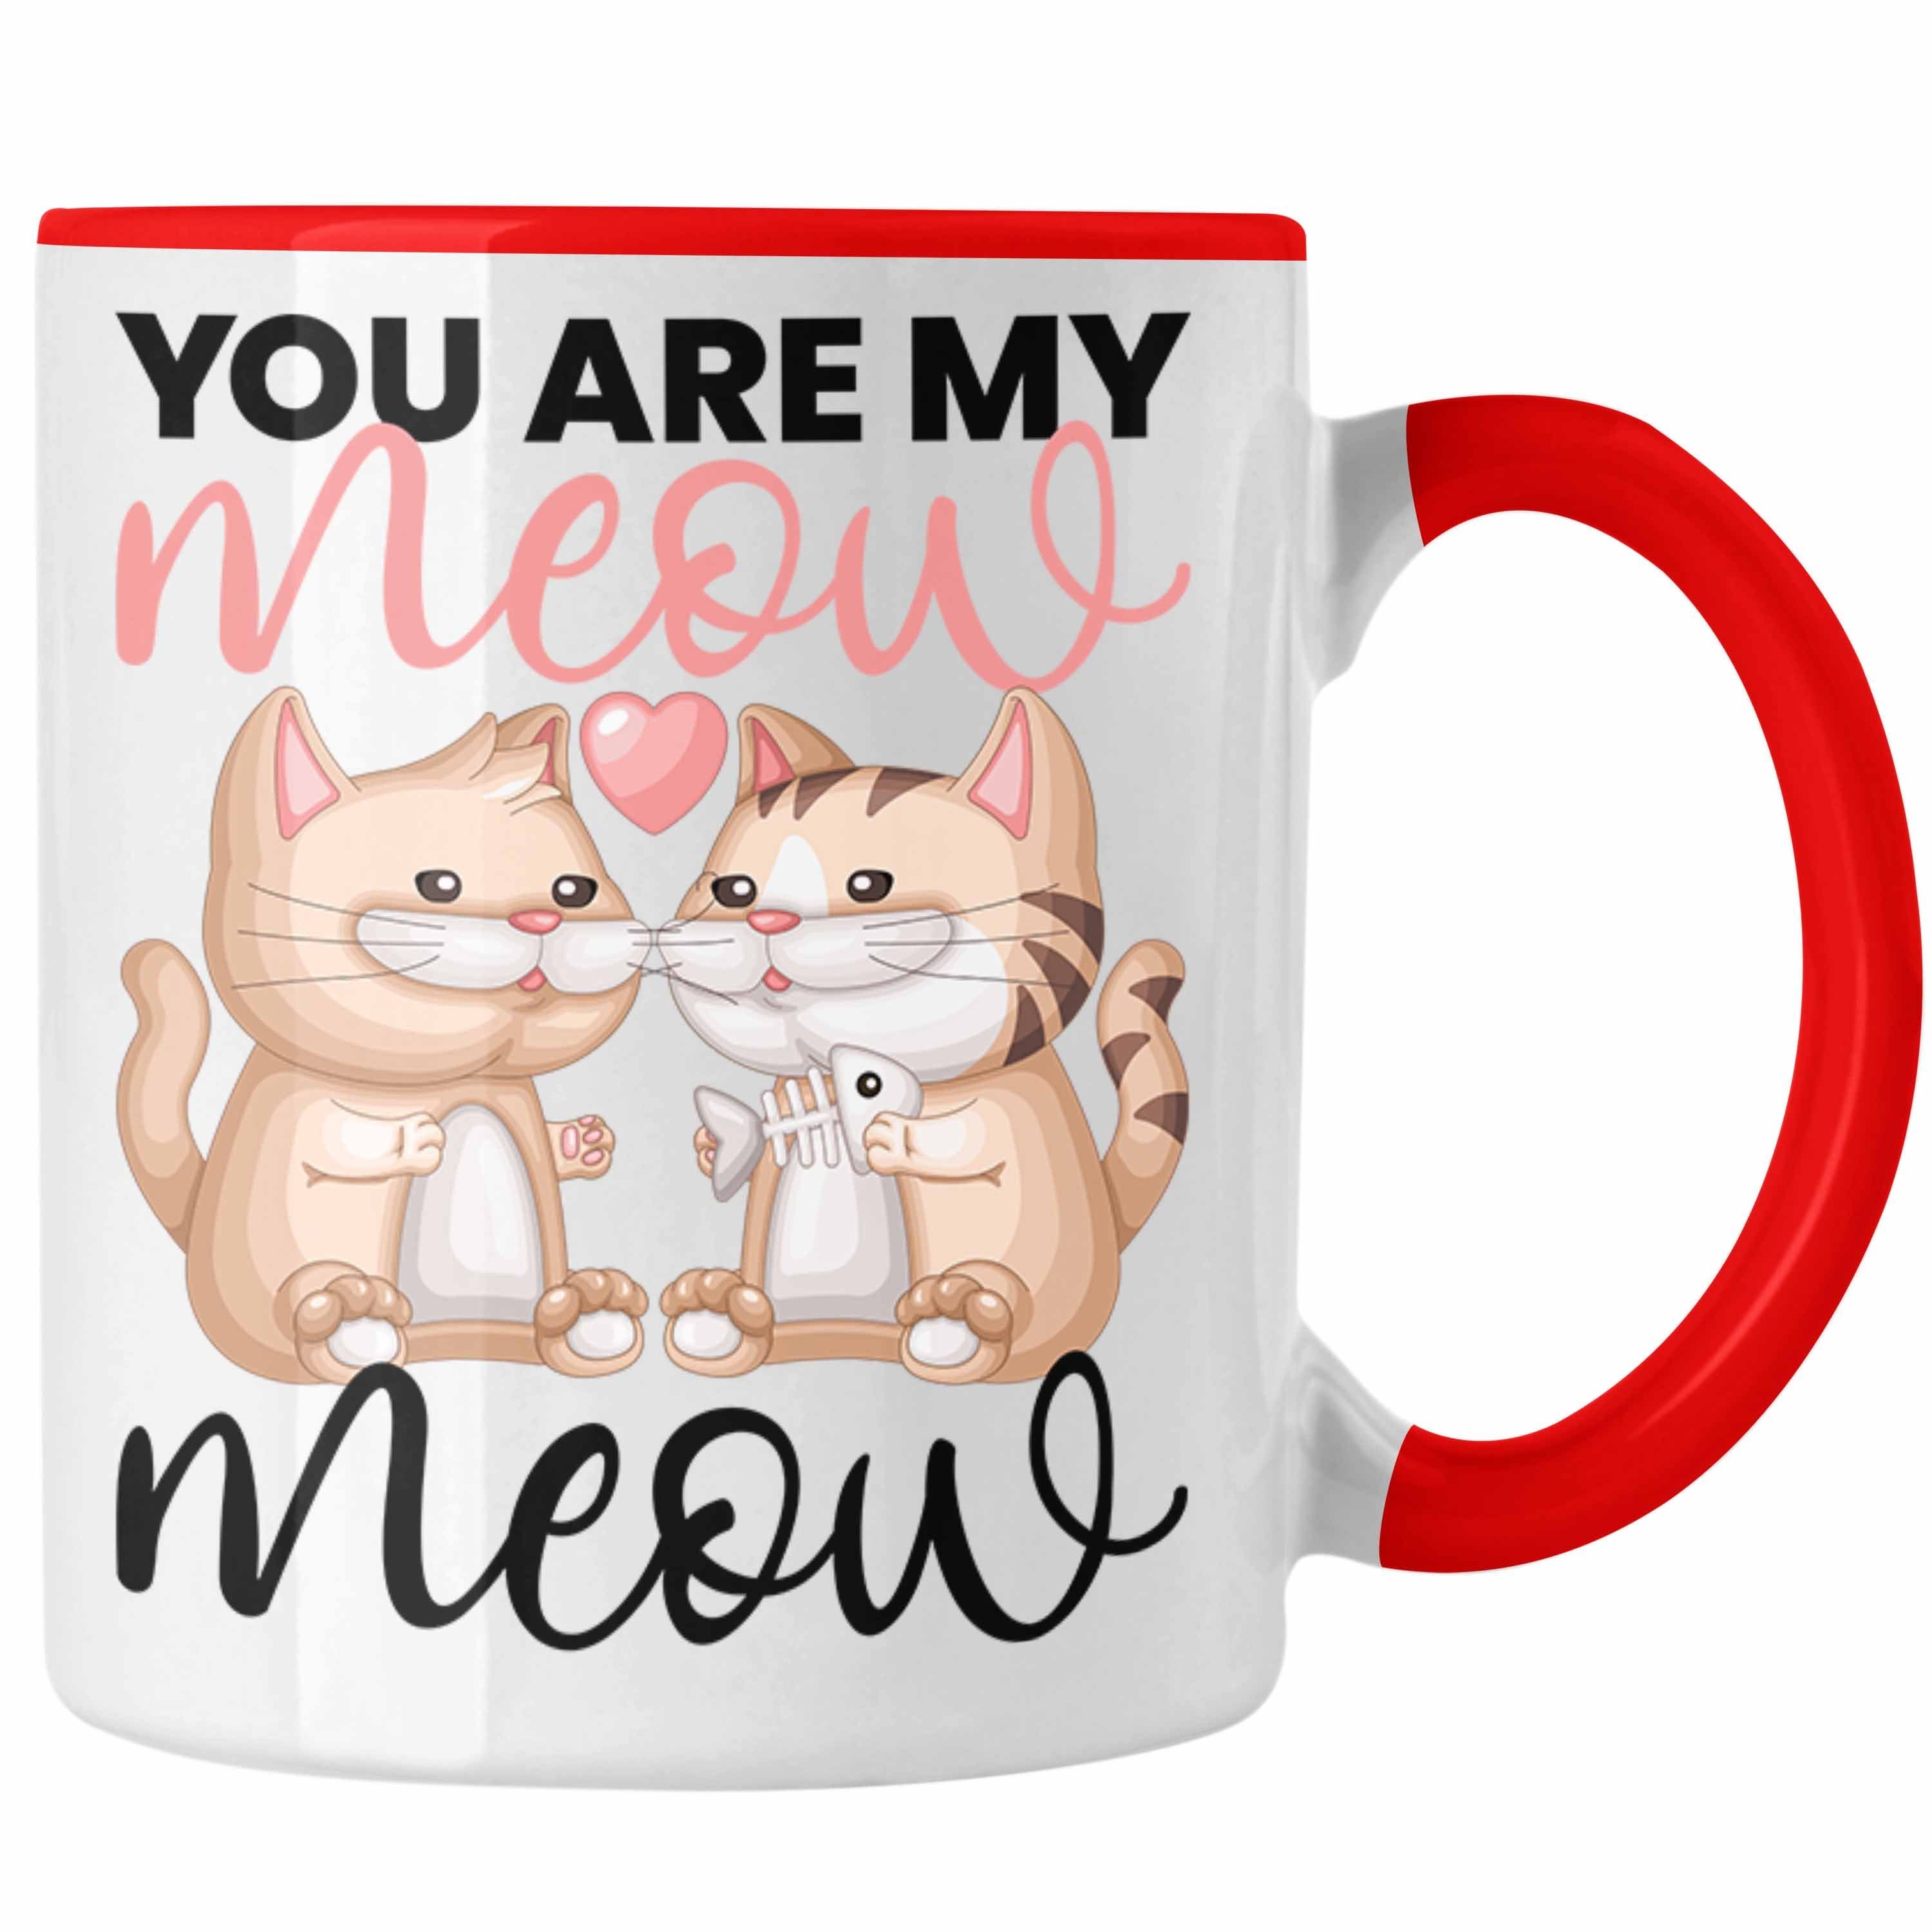 Trendation Tasse "You Are My Meow Meow" Tasse für Katzenliebhaber Geschenk zum Valentin Rot